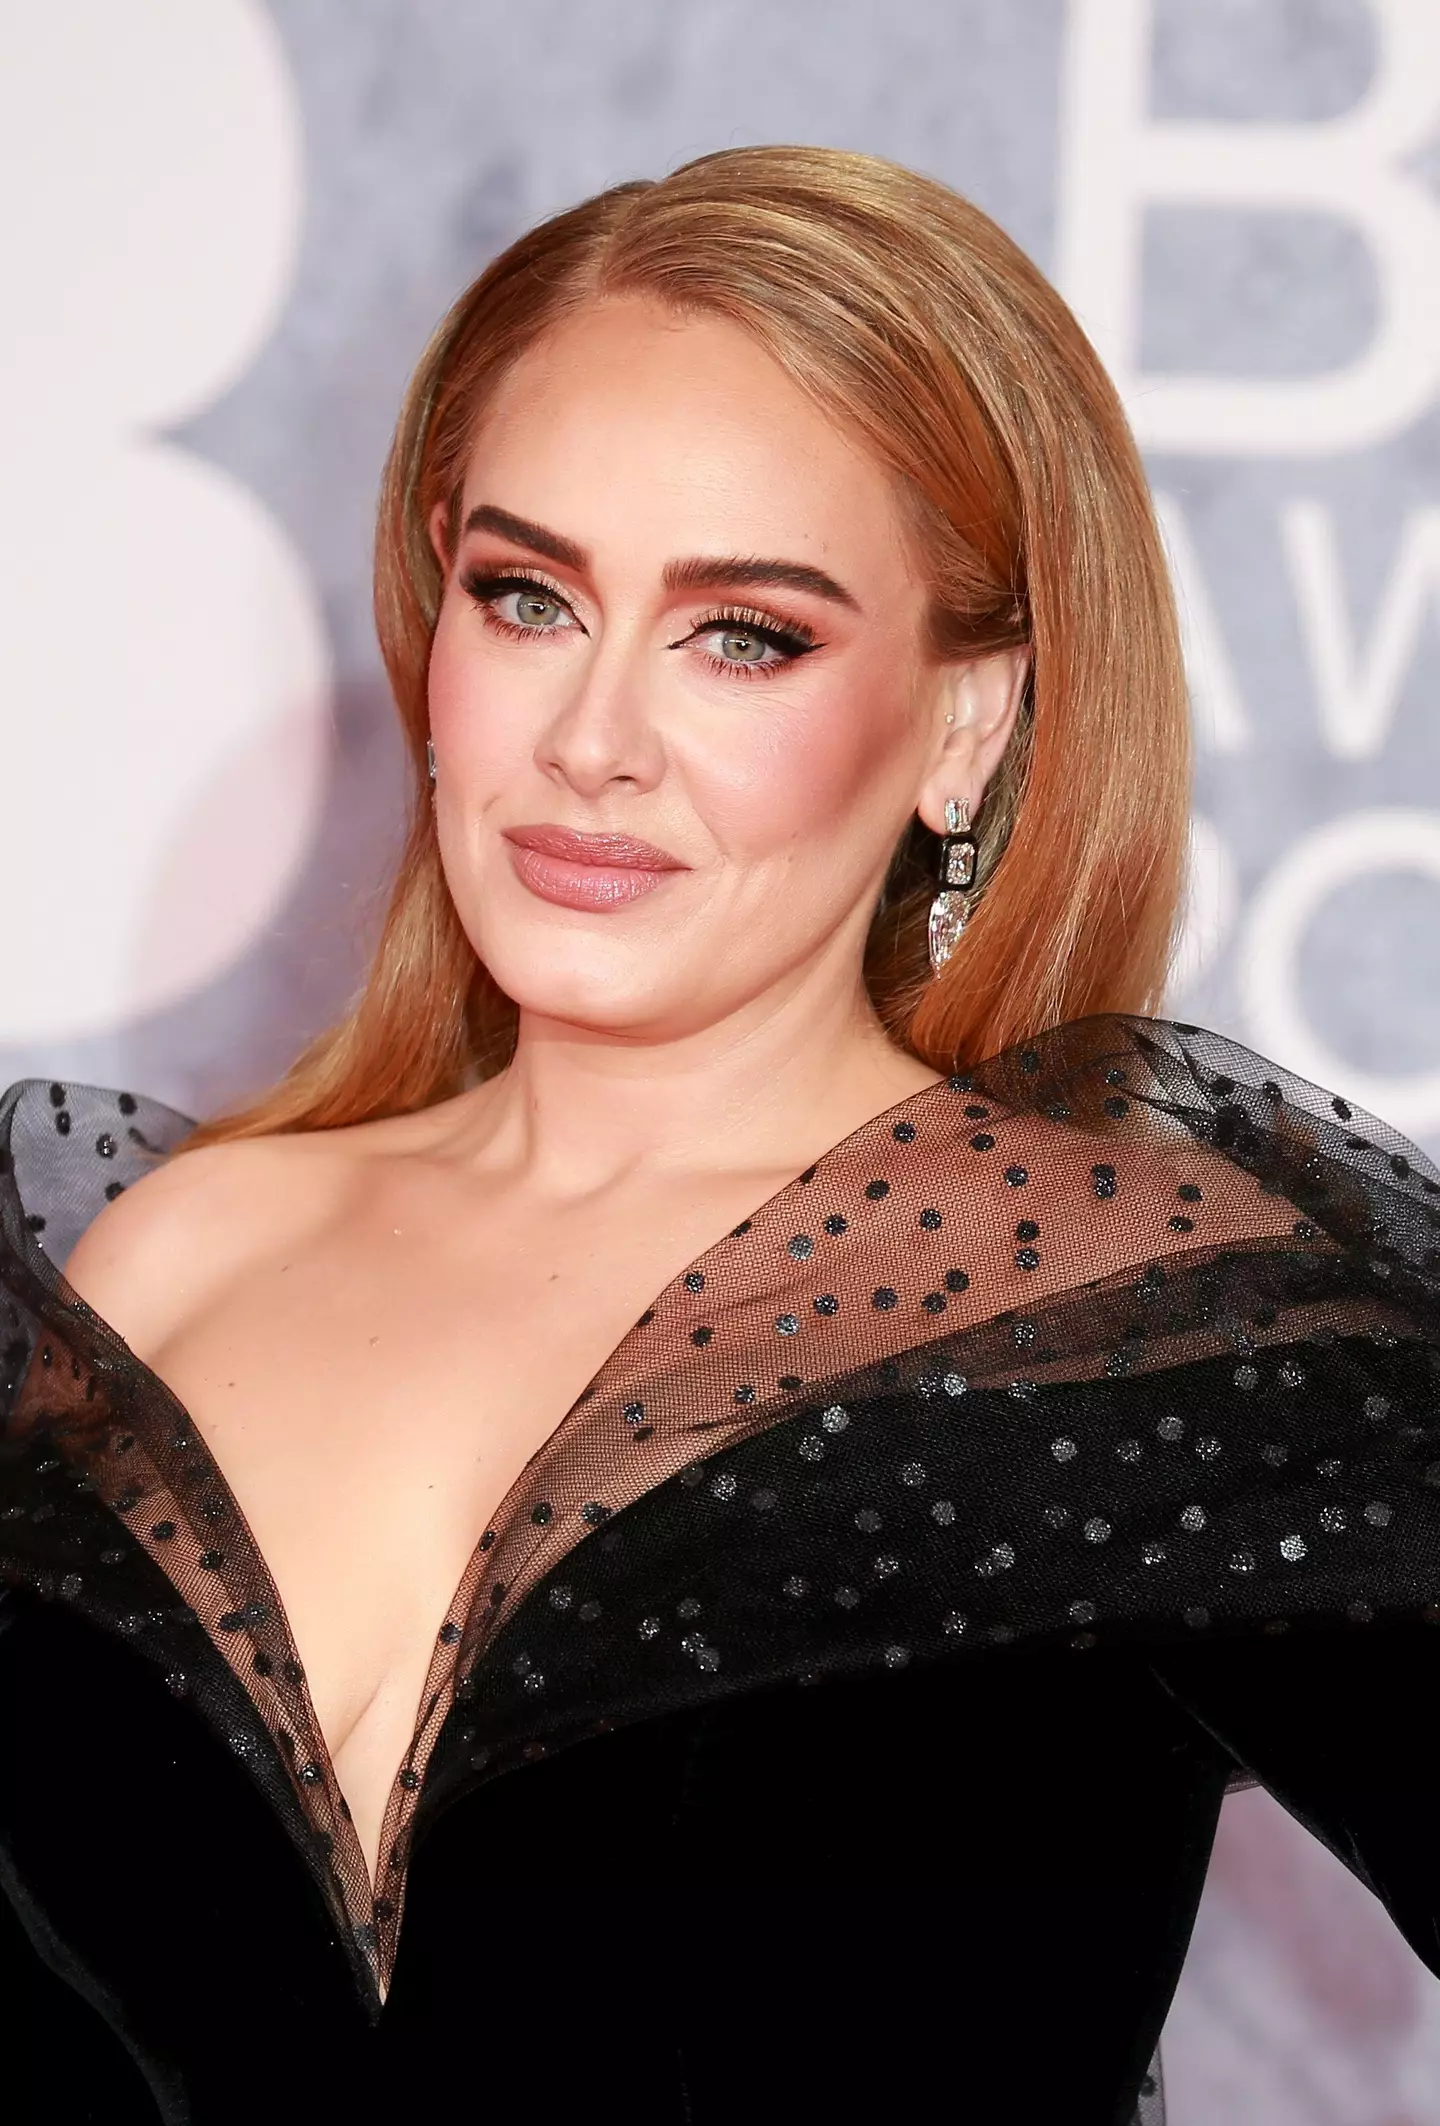 Adele' 'Weekends with Adele' residency has been a big hit.